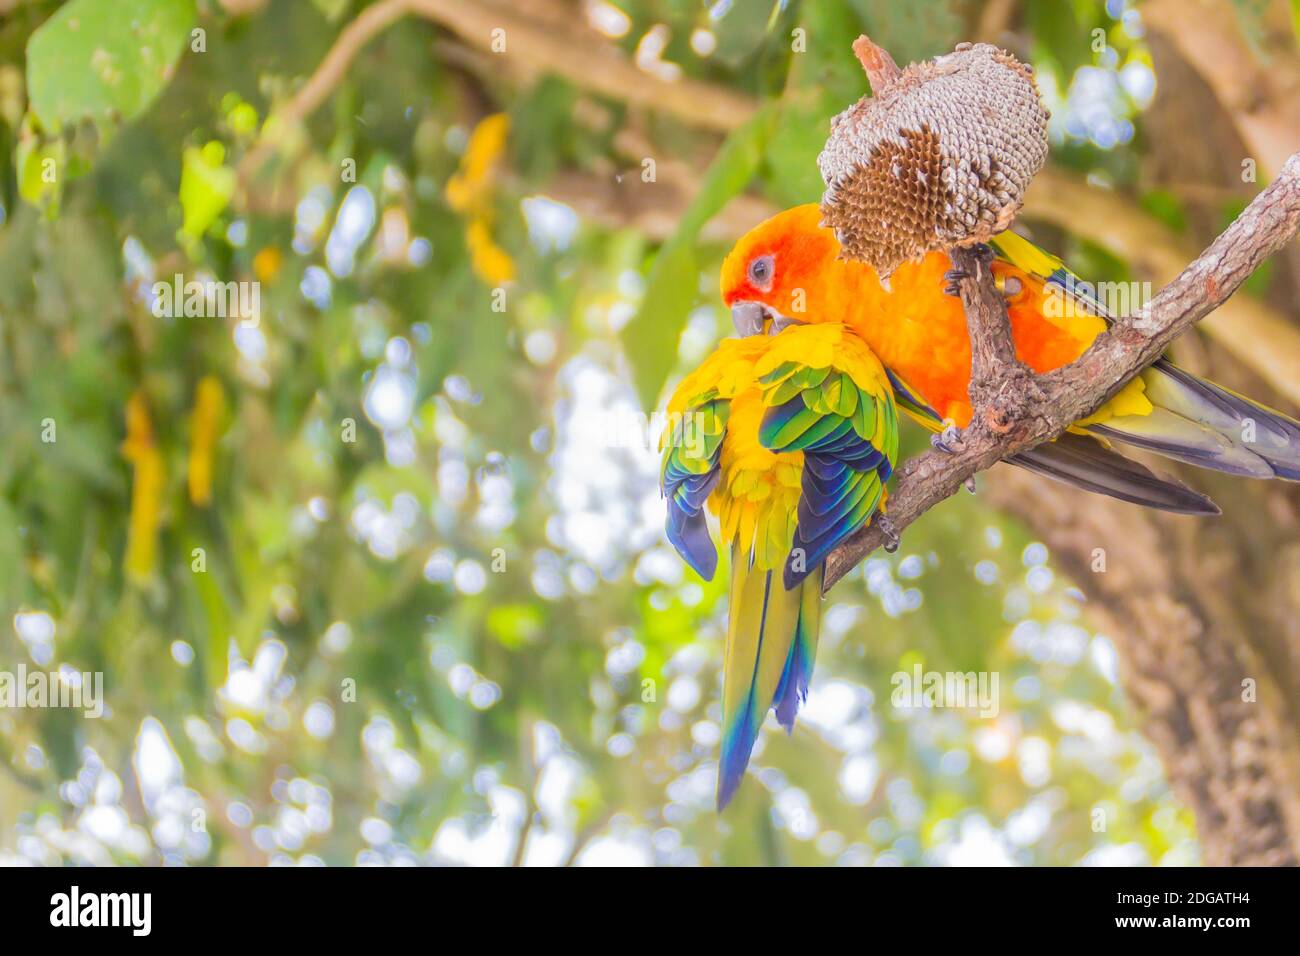 Simpatico sole parakeet o sole conure pappagallo stanno mangiando i semi del fiore del sole. Il suo nome scientifico è Aratinga solstitialis, una taglia media, colorata in modo vibrante Foto Stock